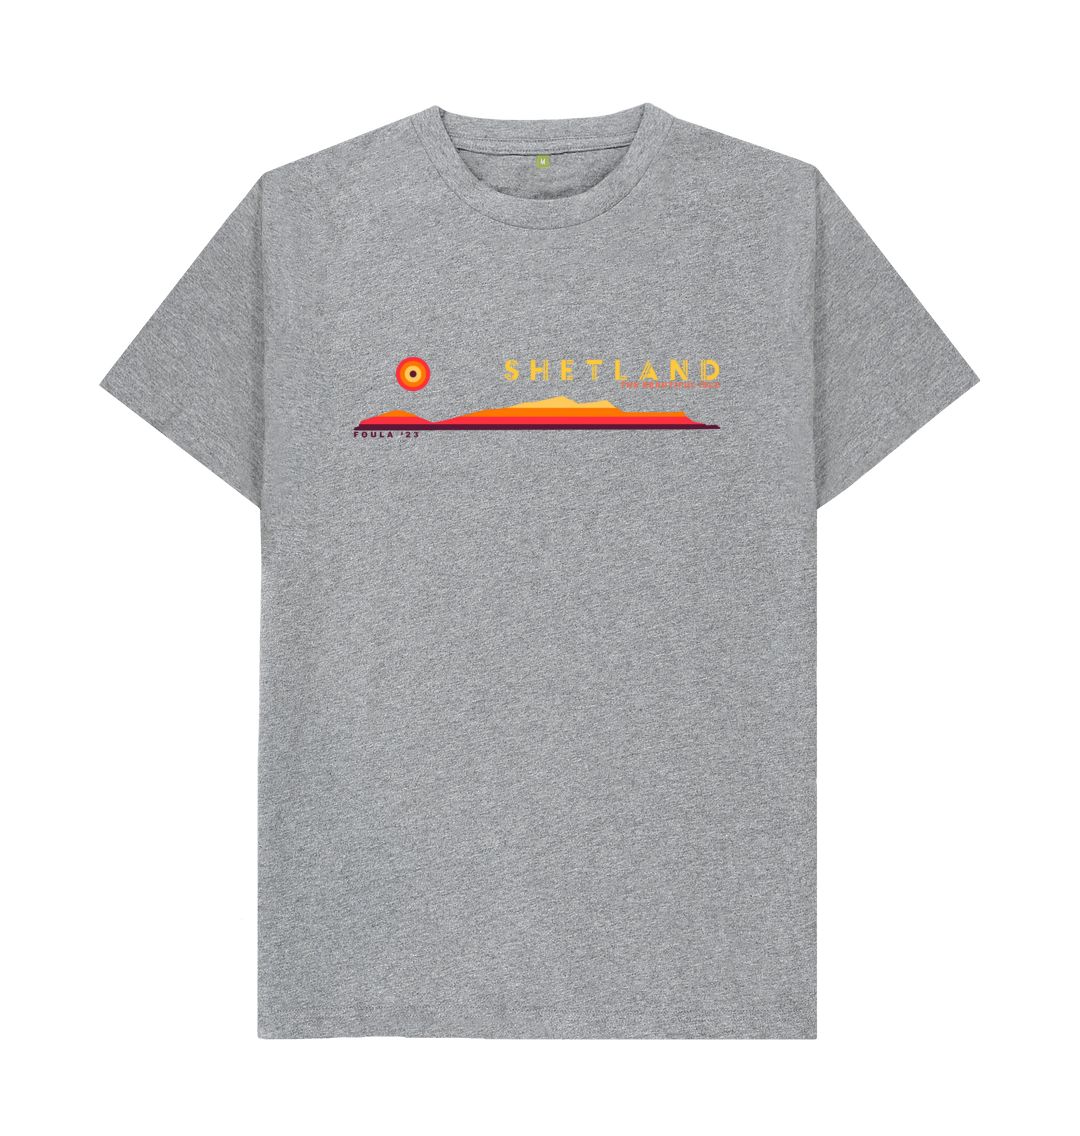 Athletic Grey Foula Sunset Mens T-Shirt | Shetland, The Beautiful Isle